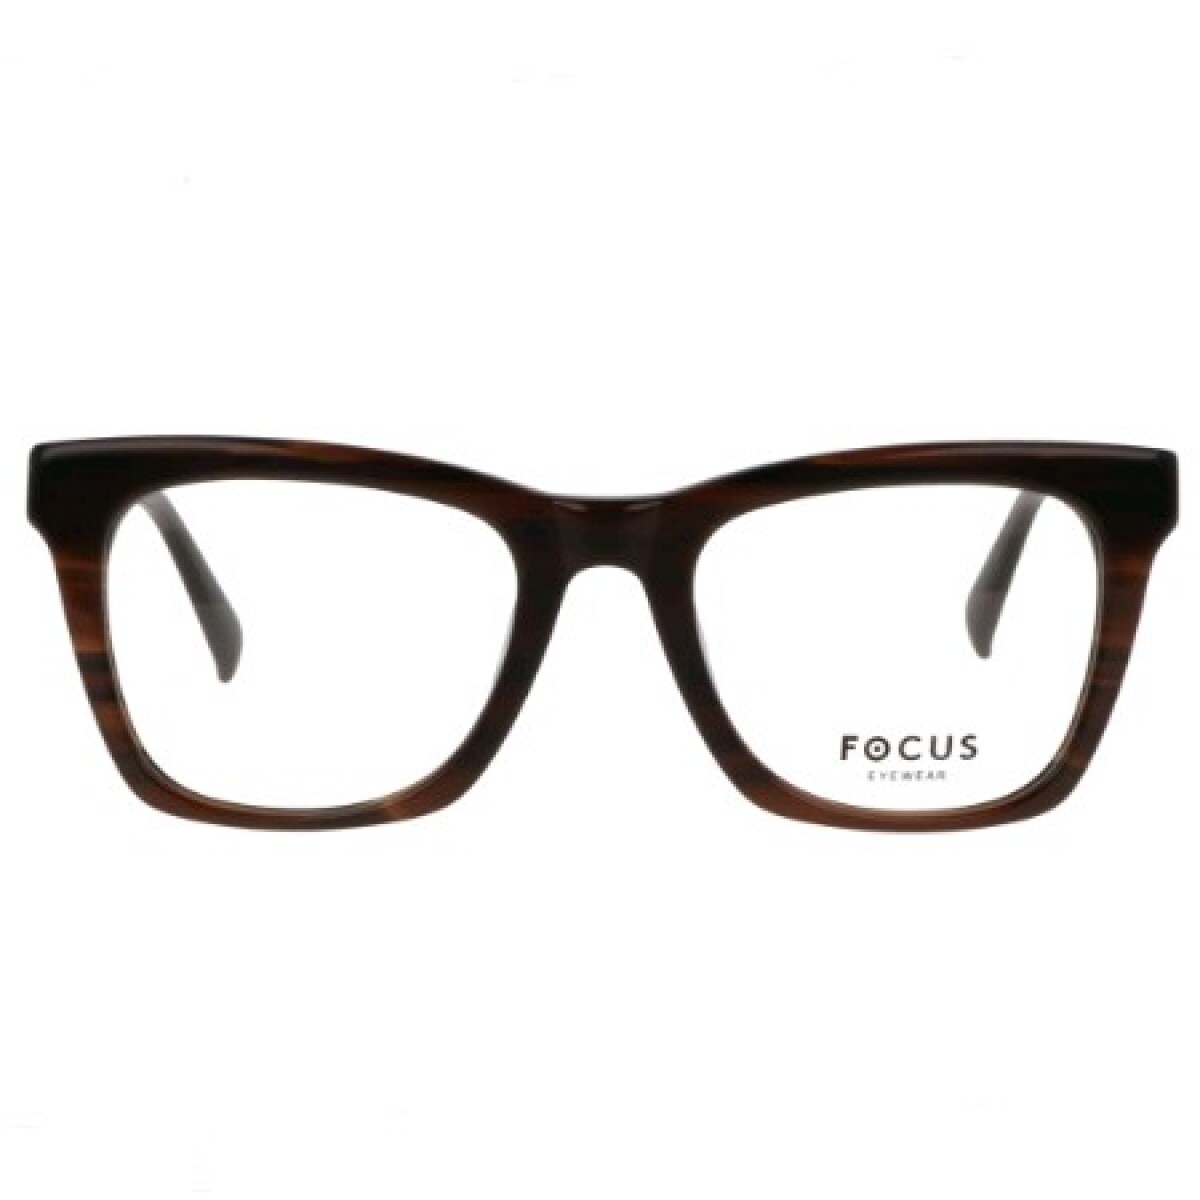 Focus Premium 364 Marron 